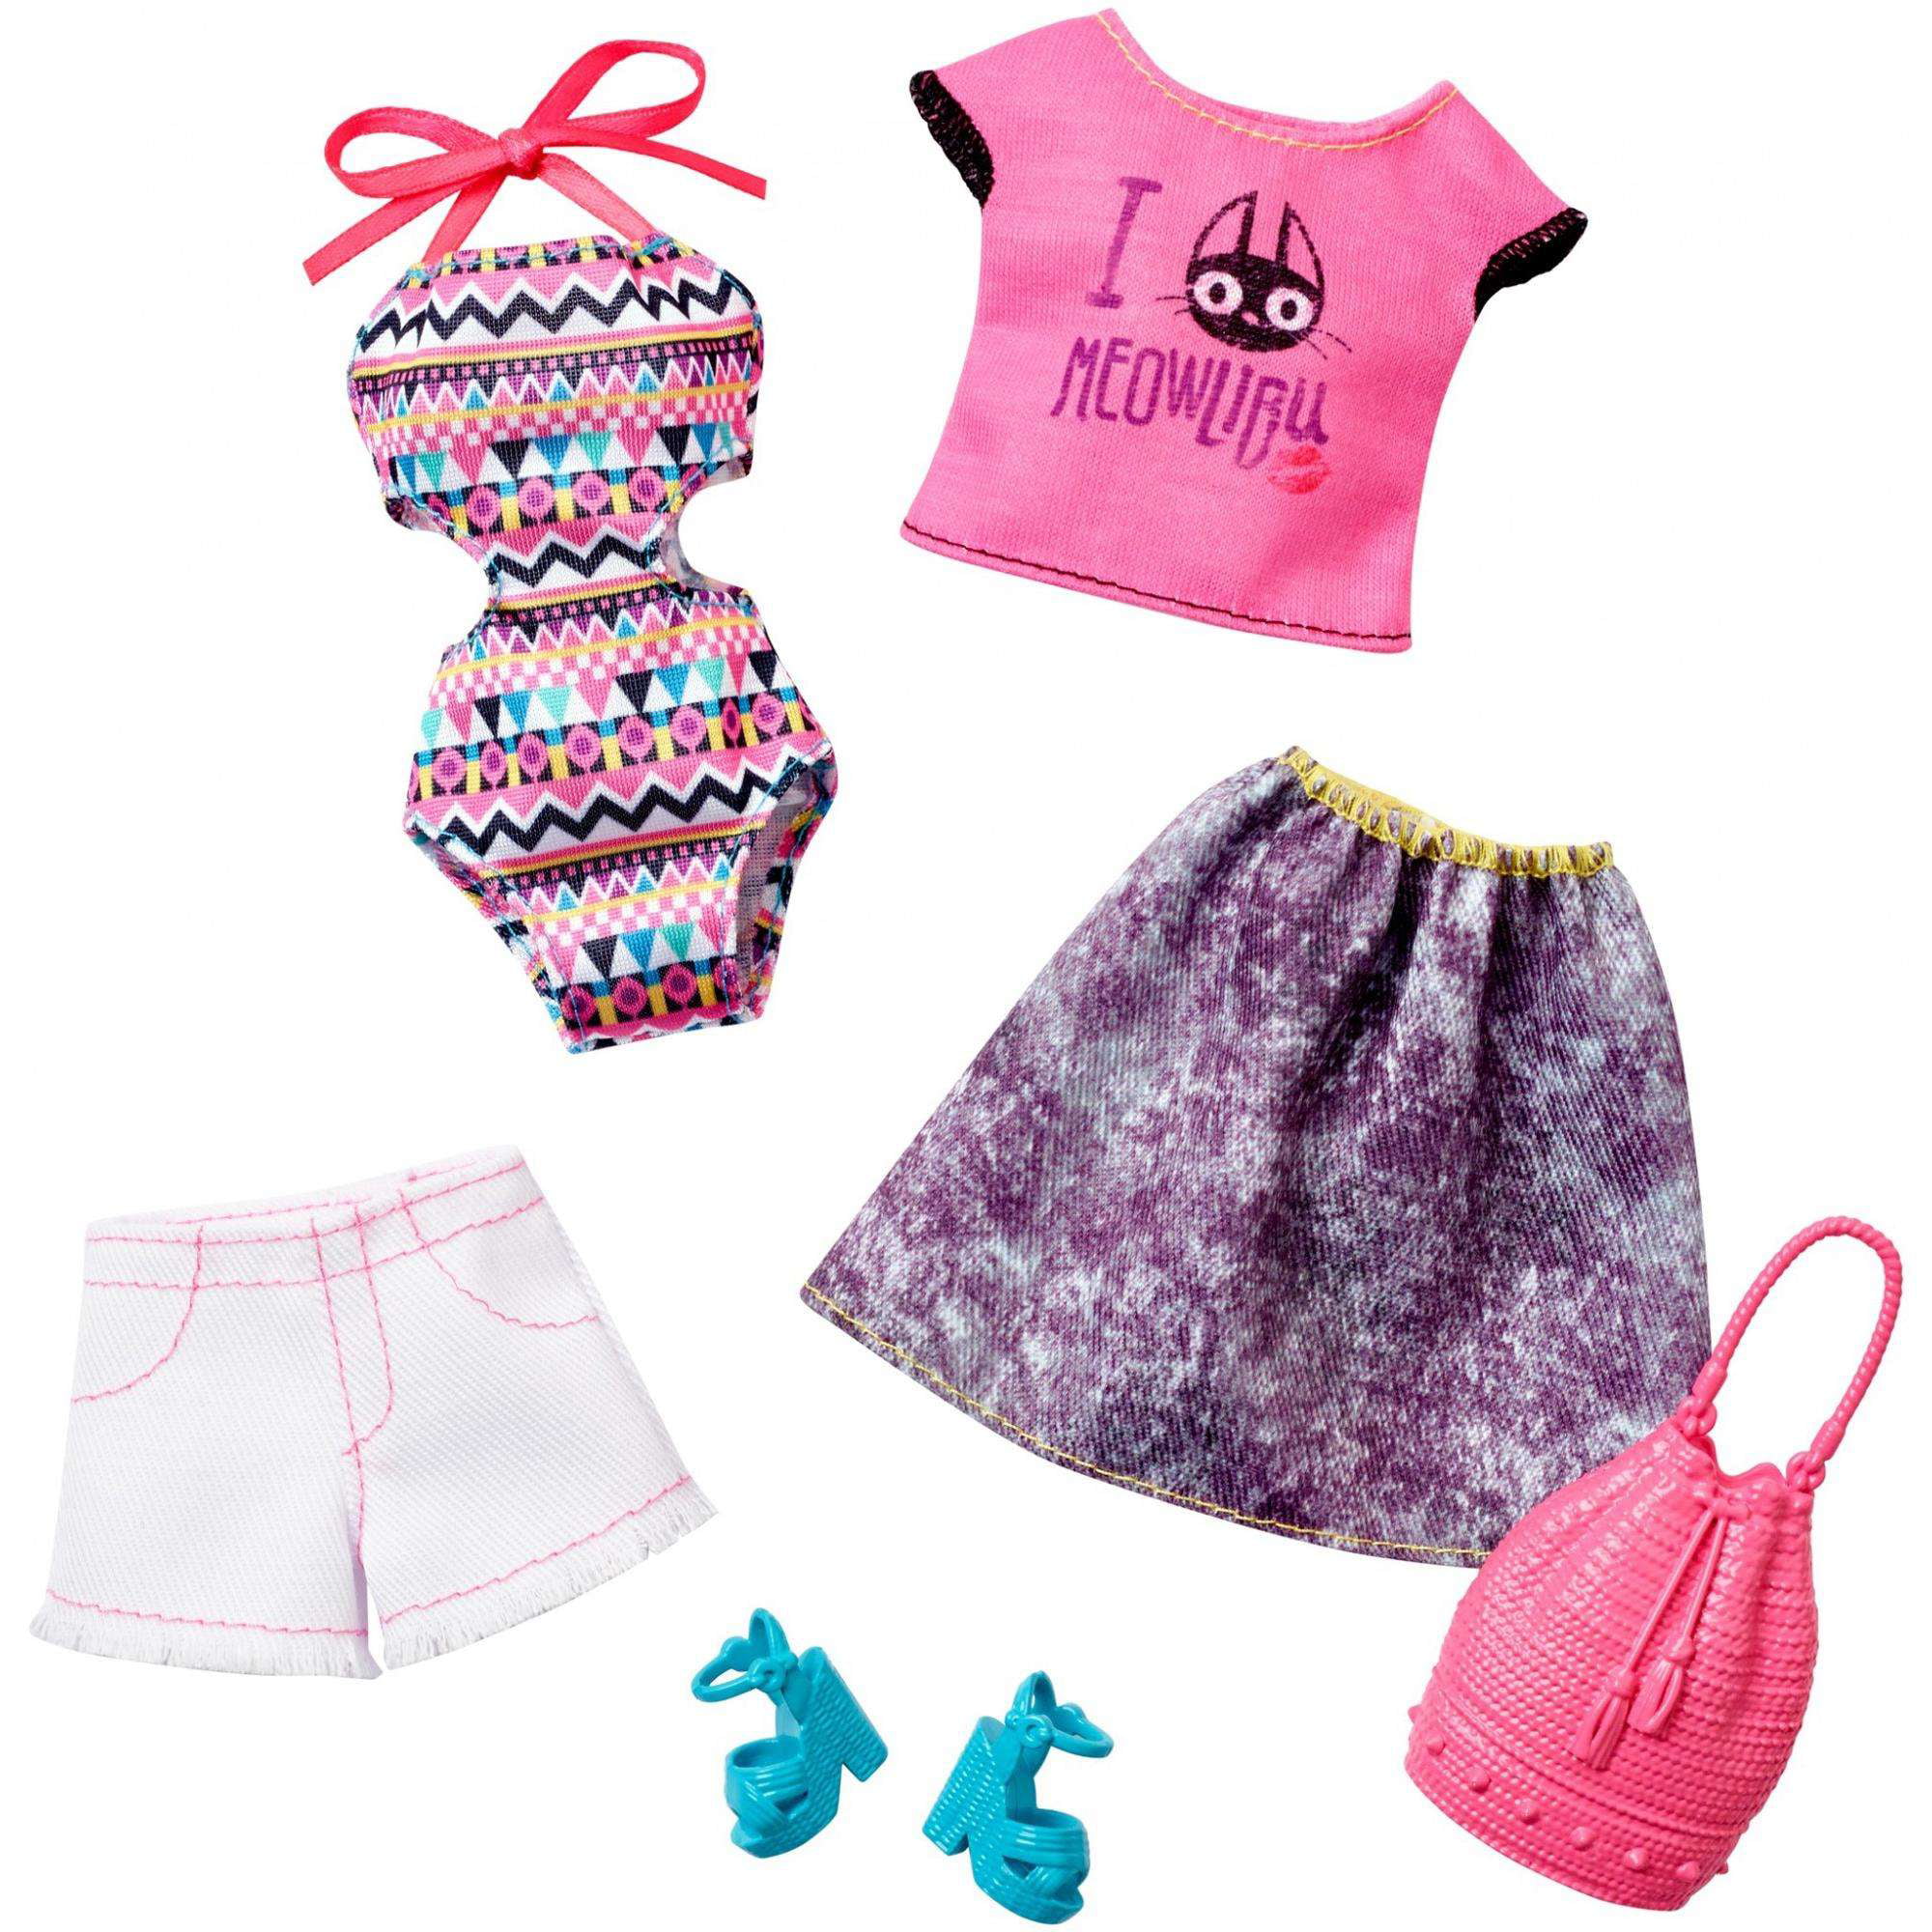 Одежда кукла барби: Обувь, одежда и аксессуары для кукол Барби и Кена (Barbie & Ken)